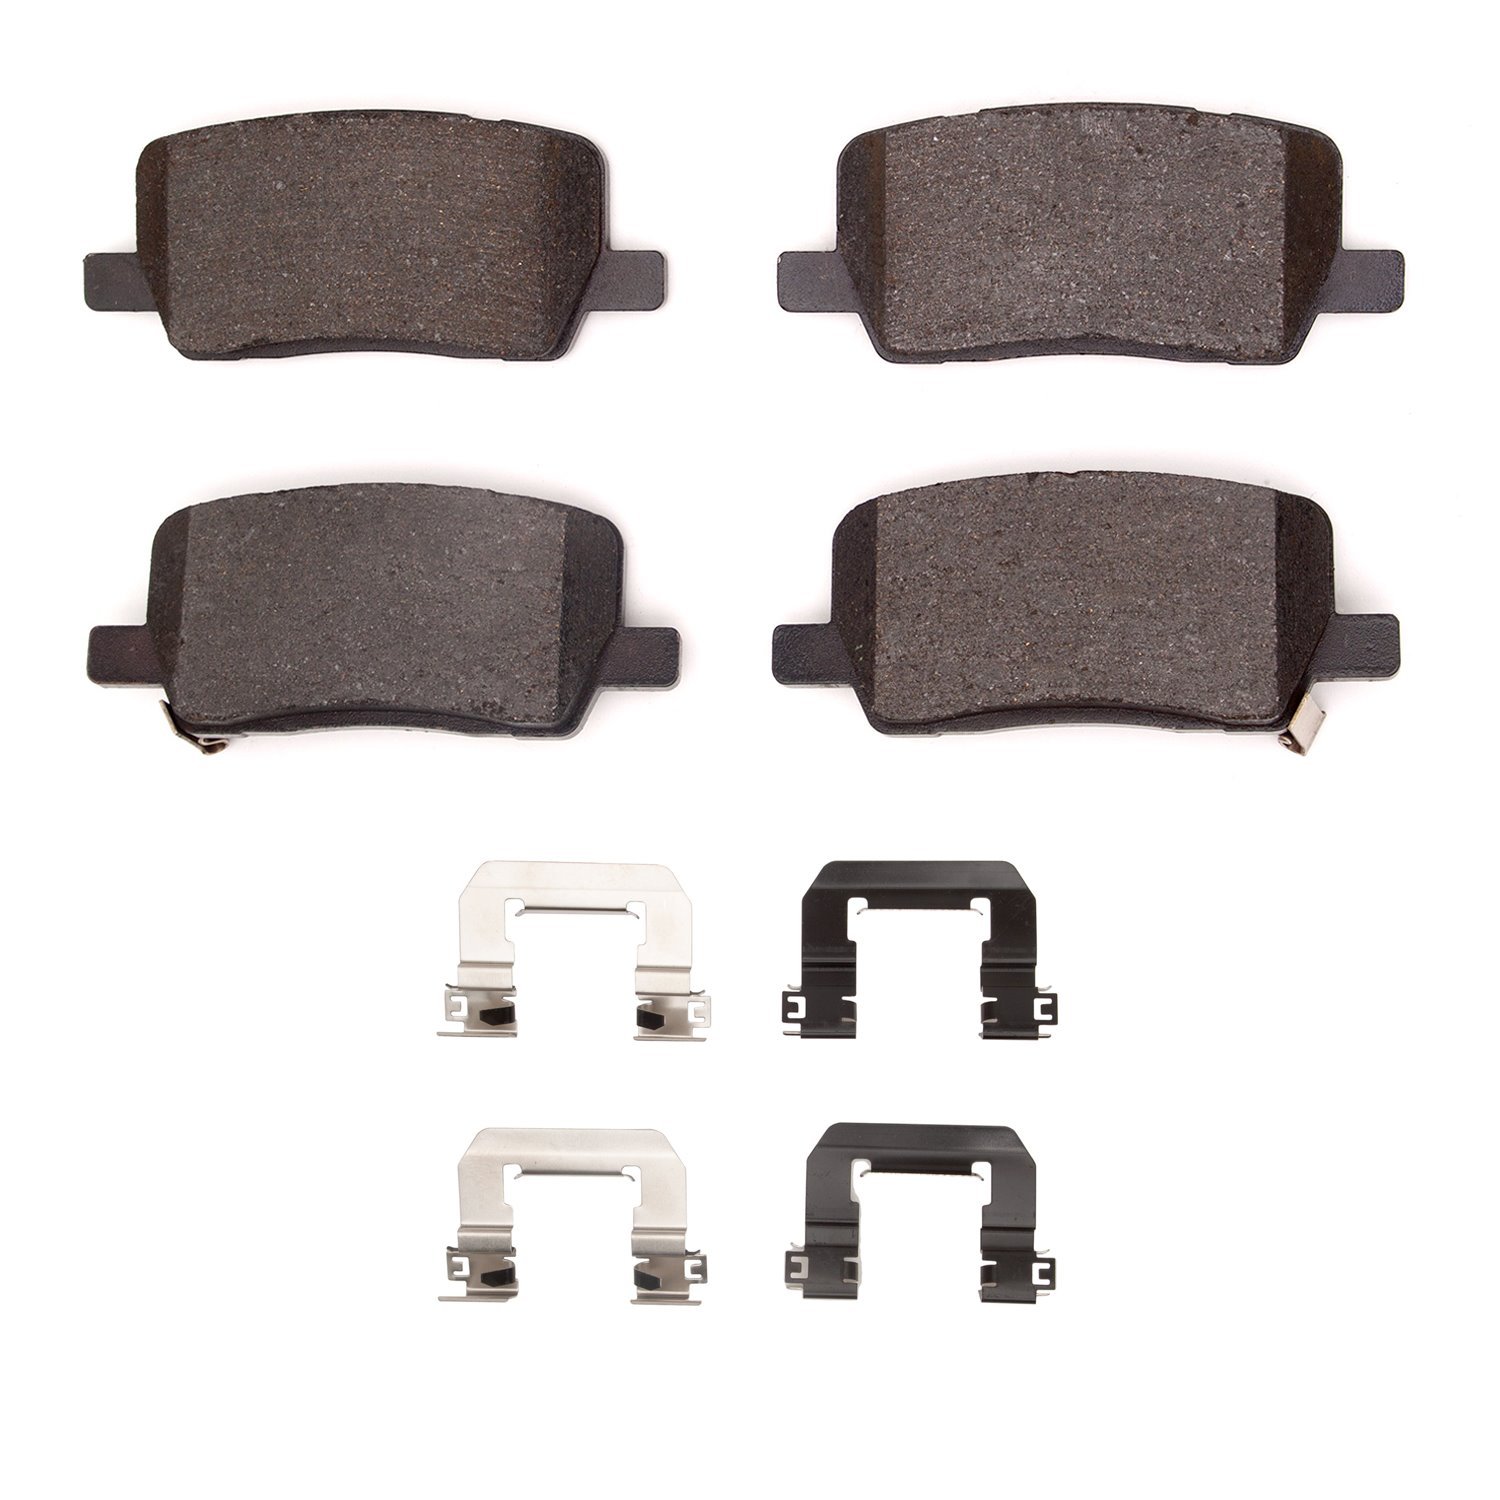 1310-2164-01 3000-Series Ceramic Brake Pads & Hardware Kit, Fits Select Tesla, Position: Rear